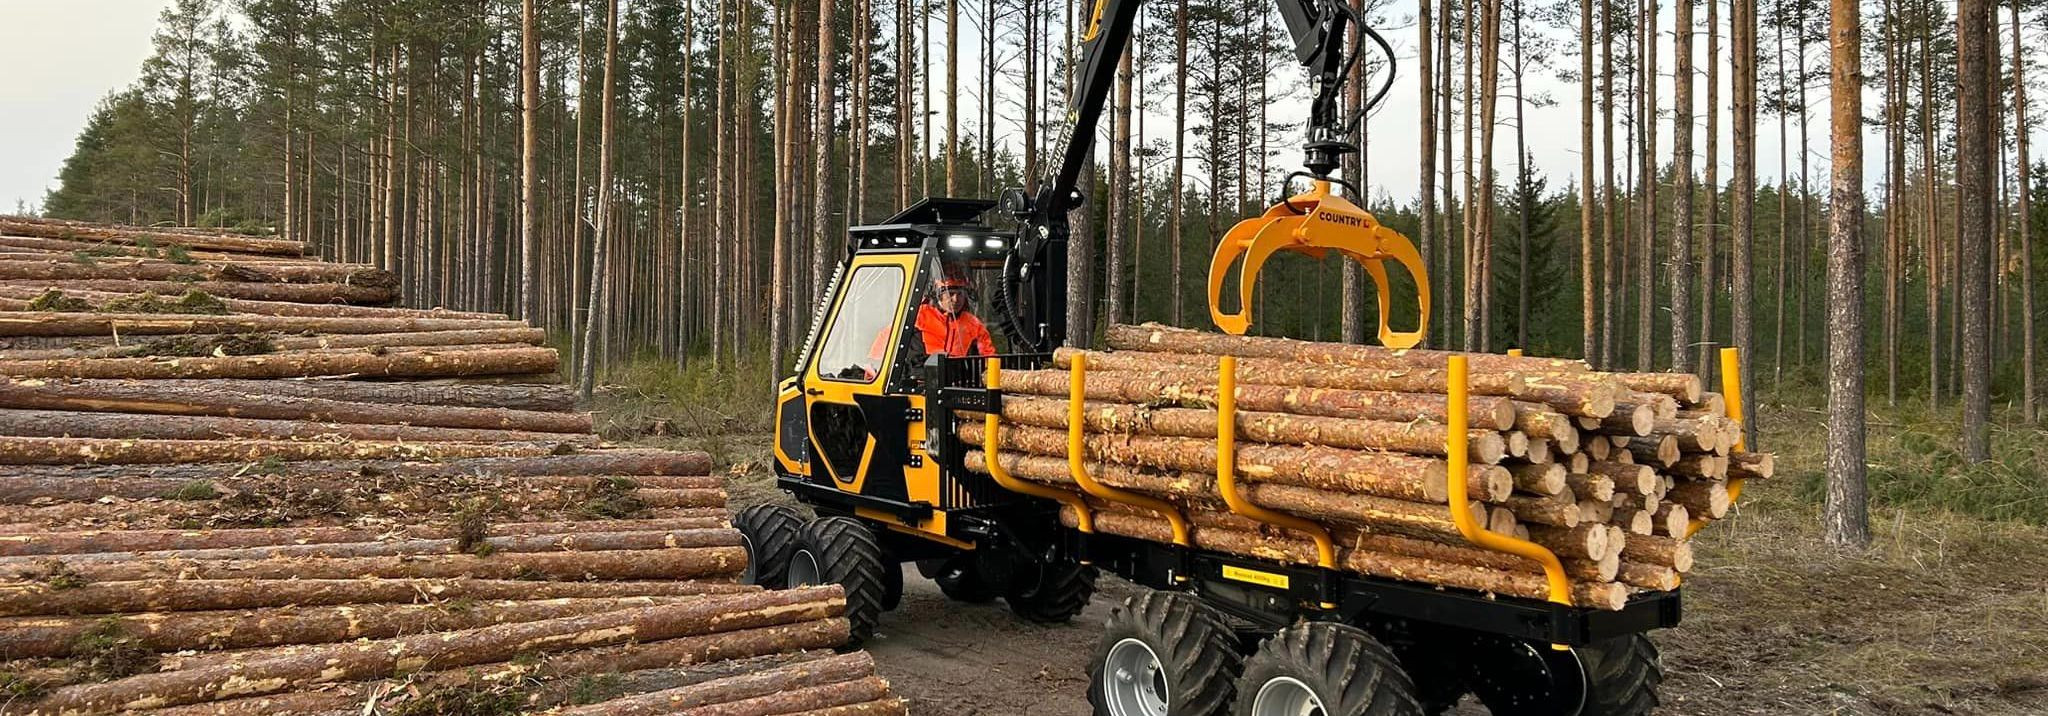 Mõned lihtsad sammud, kuidas tagada metsandusmasinate tipptasemel toimimine.Regulaarne PuhastamineAlustage lihtsalt - regulaarne puhastamine. Eemaldage mustus, 